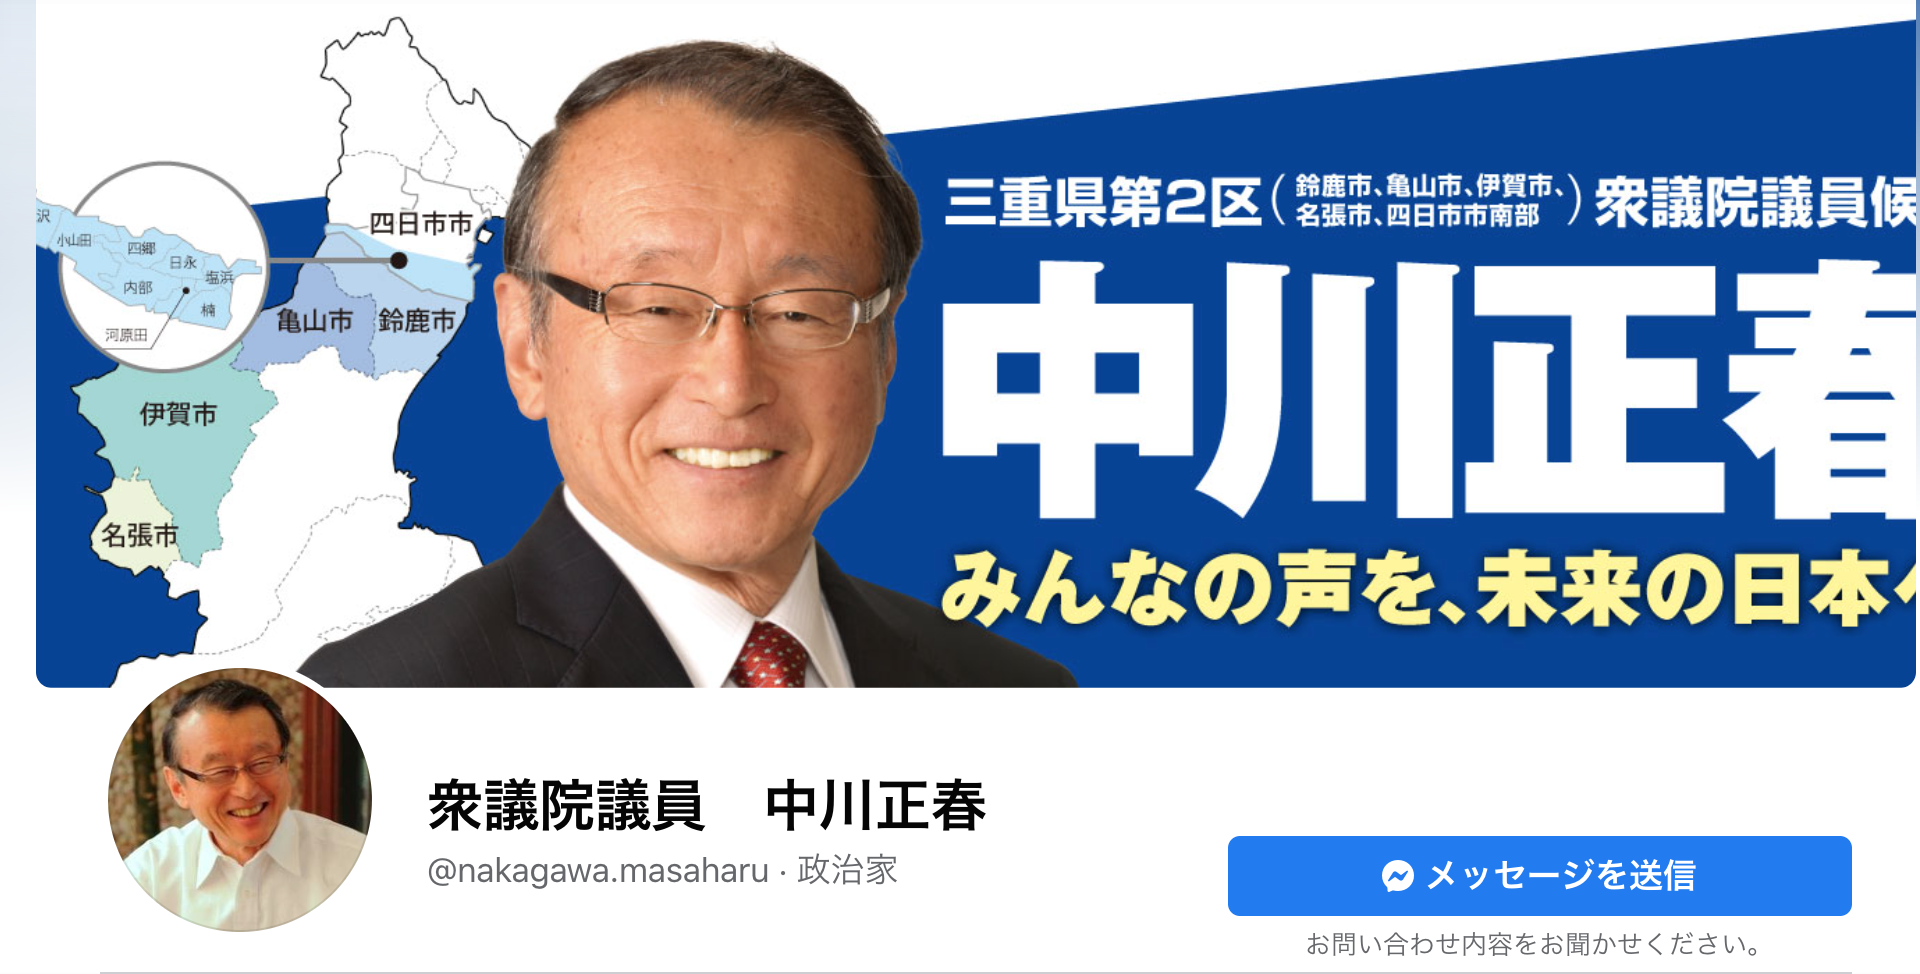 中川正春候補のフェイスブックページ